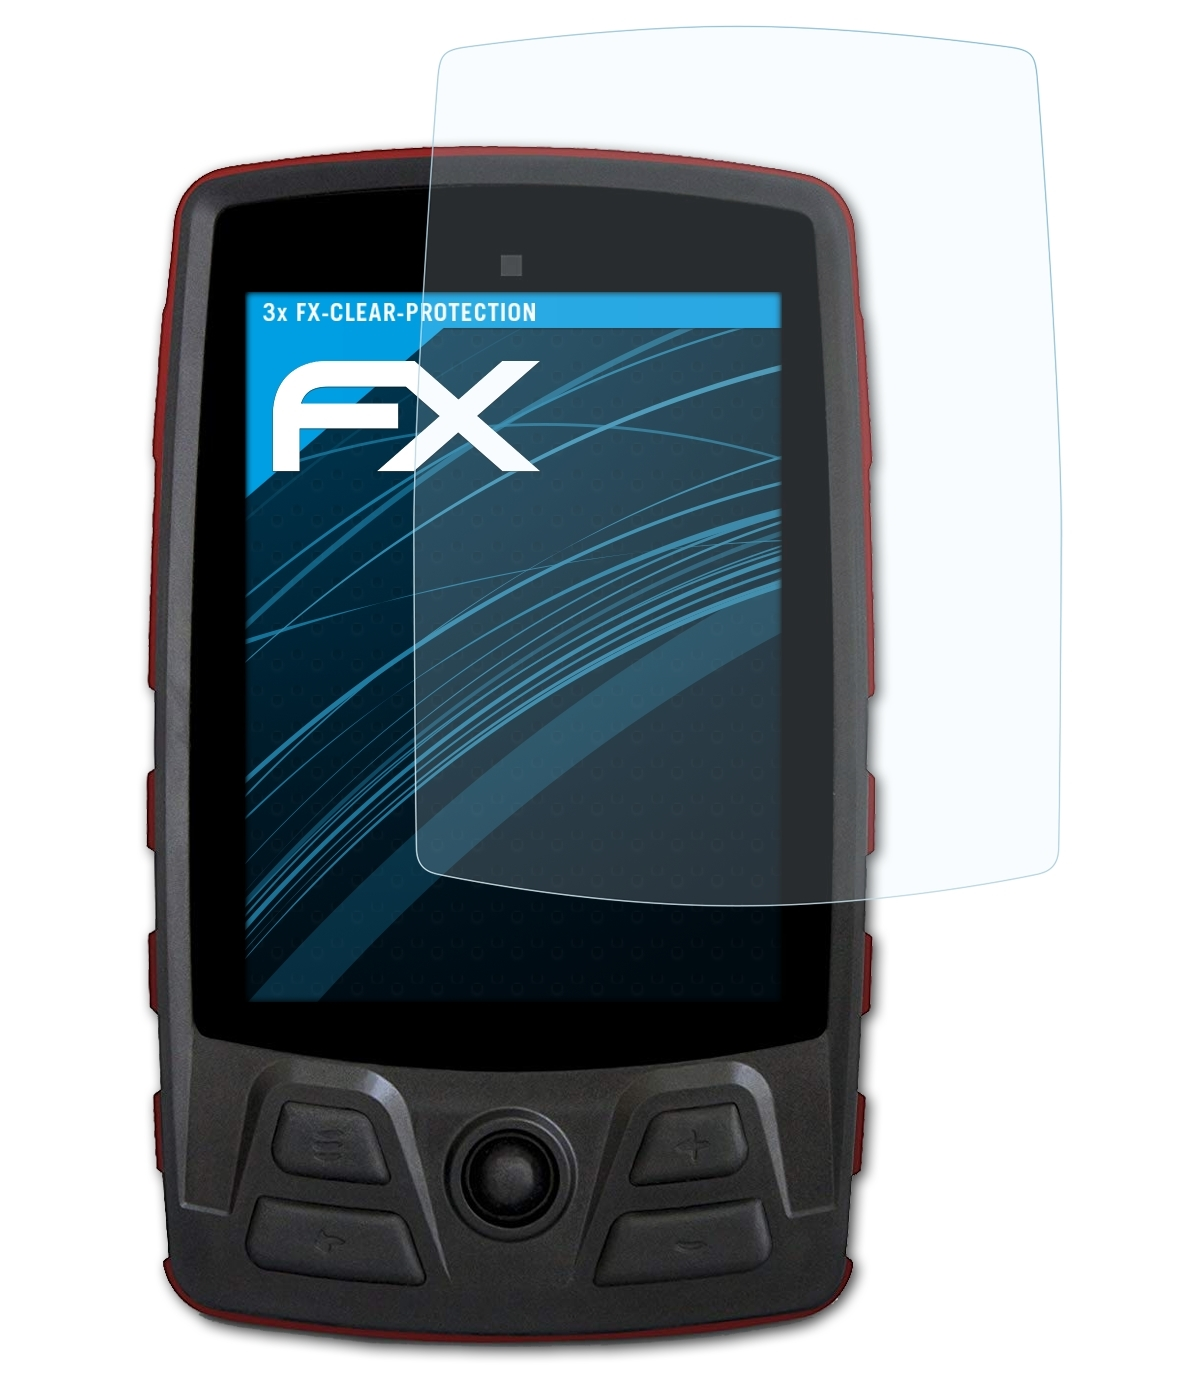 3x Aventura Displayschutz(für Motor) ATFOLIX FX-Clear TwoNav